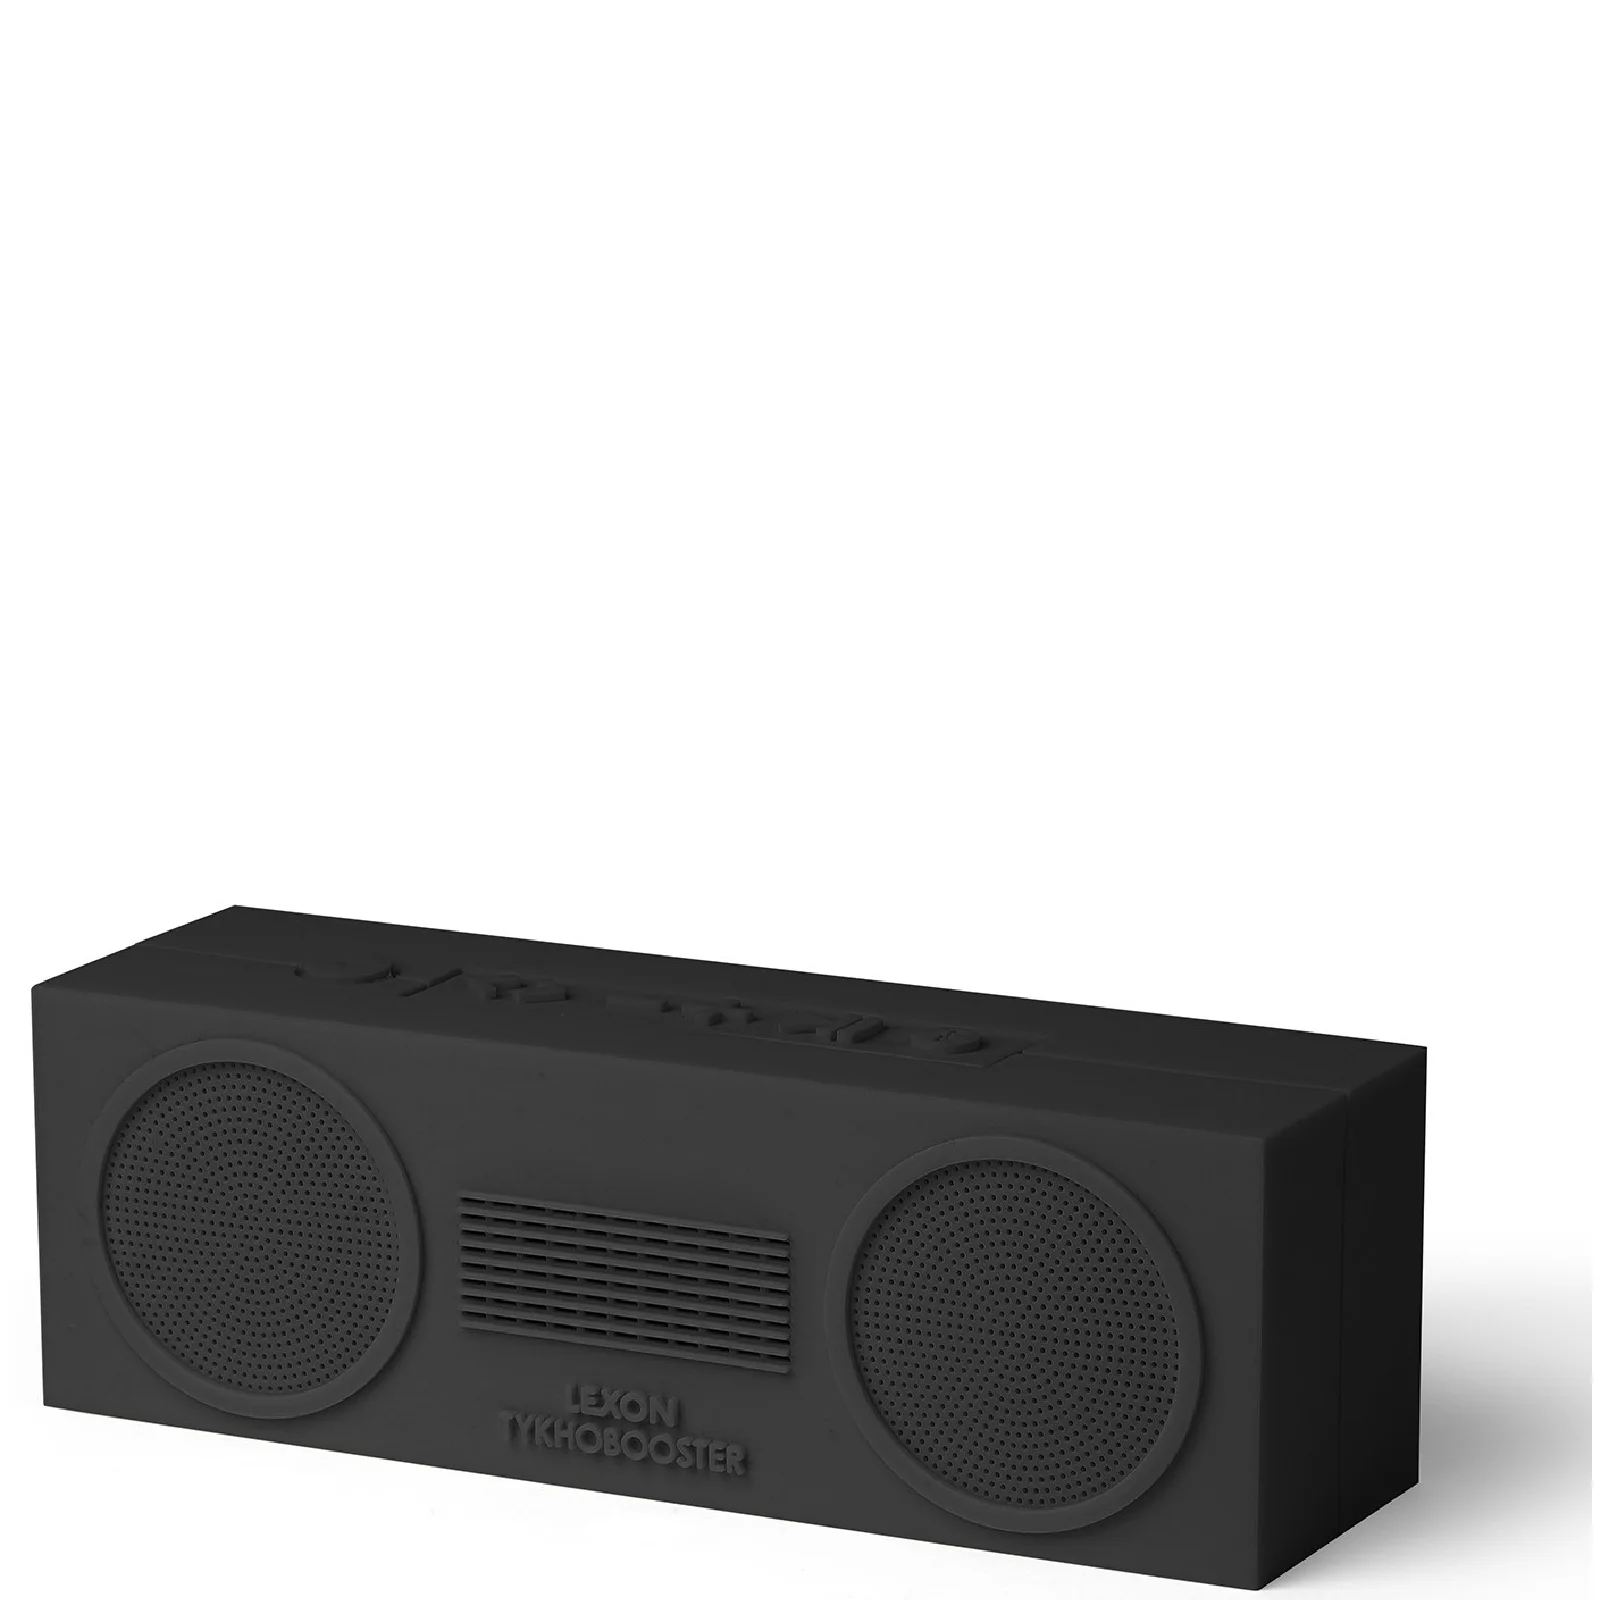 Lexon Tykho Booster Wireless Speaker - Black Image 1